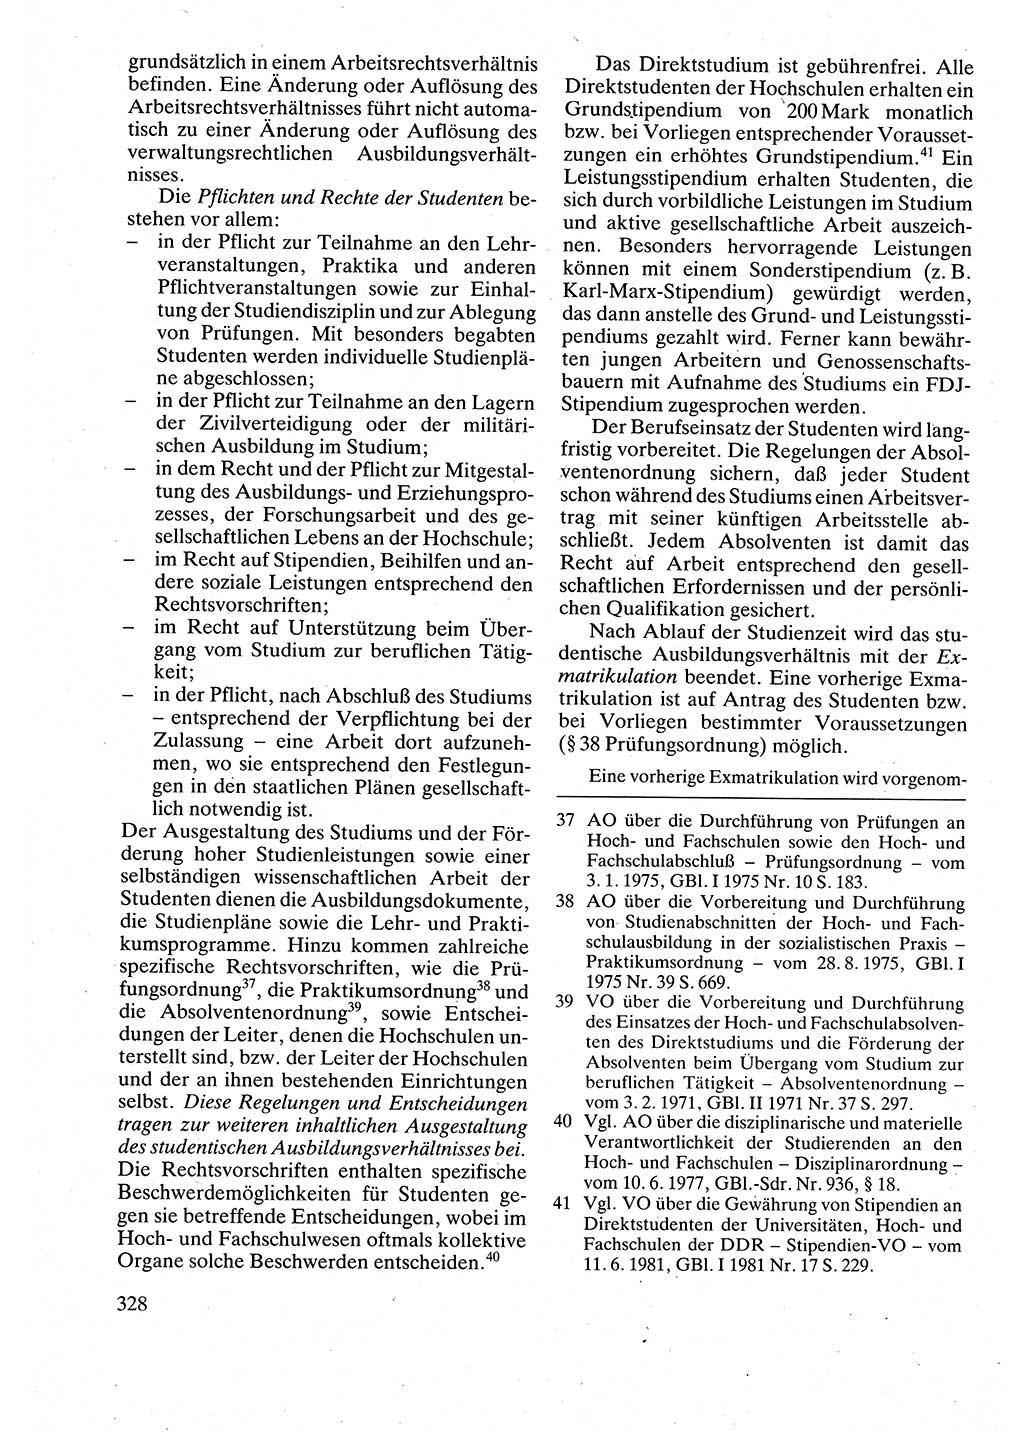 Verwaltungsrecht [Deutsche Demokratische Republik (DDR)], Lehrbuch 1988, Seite 328 (Verw.-R. DDR Lb. 1988, S. 328)